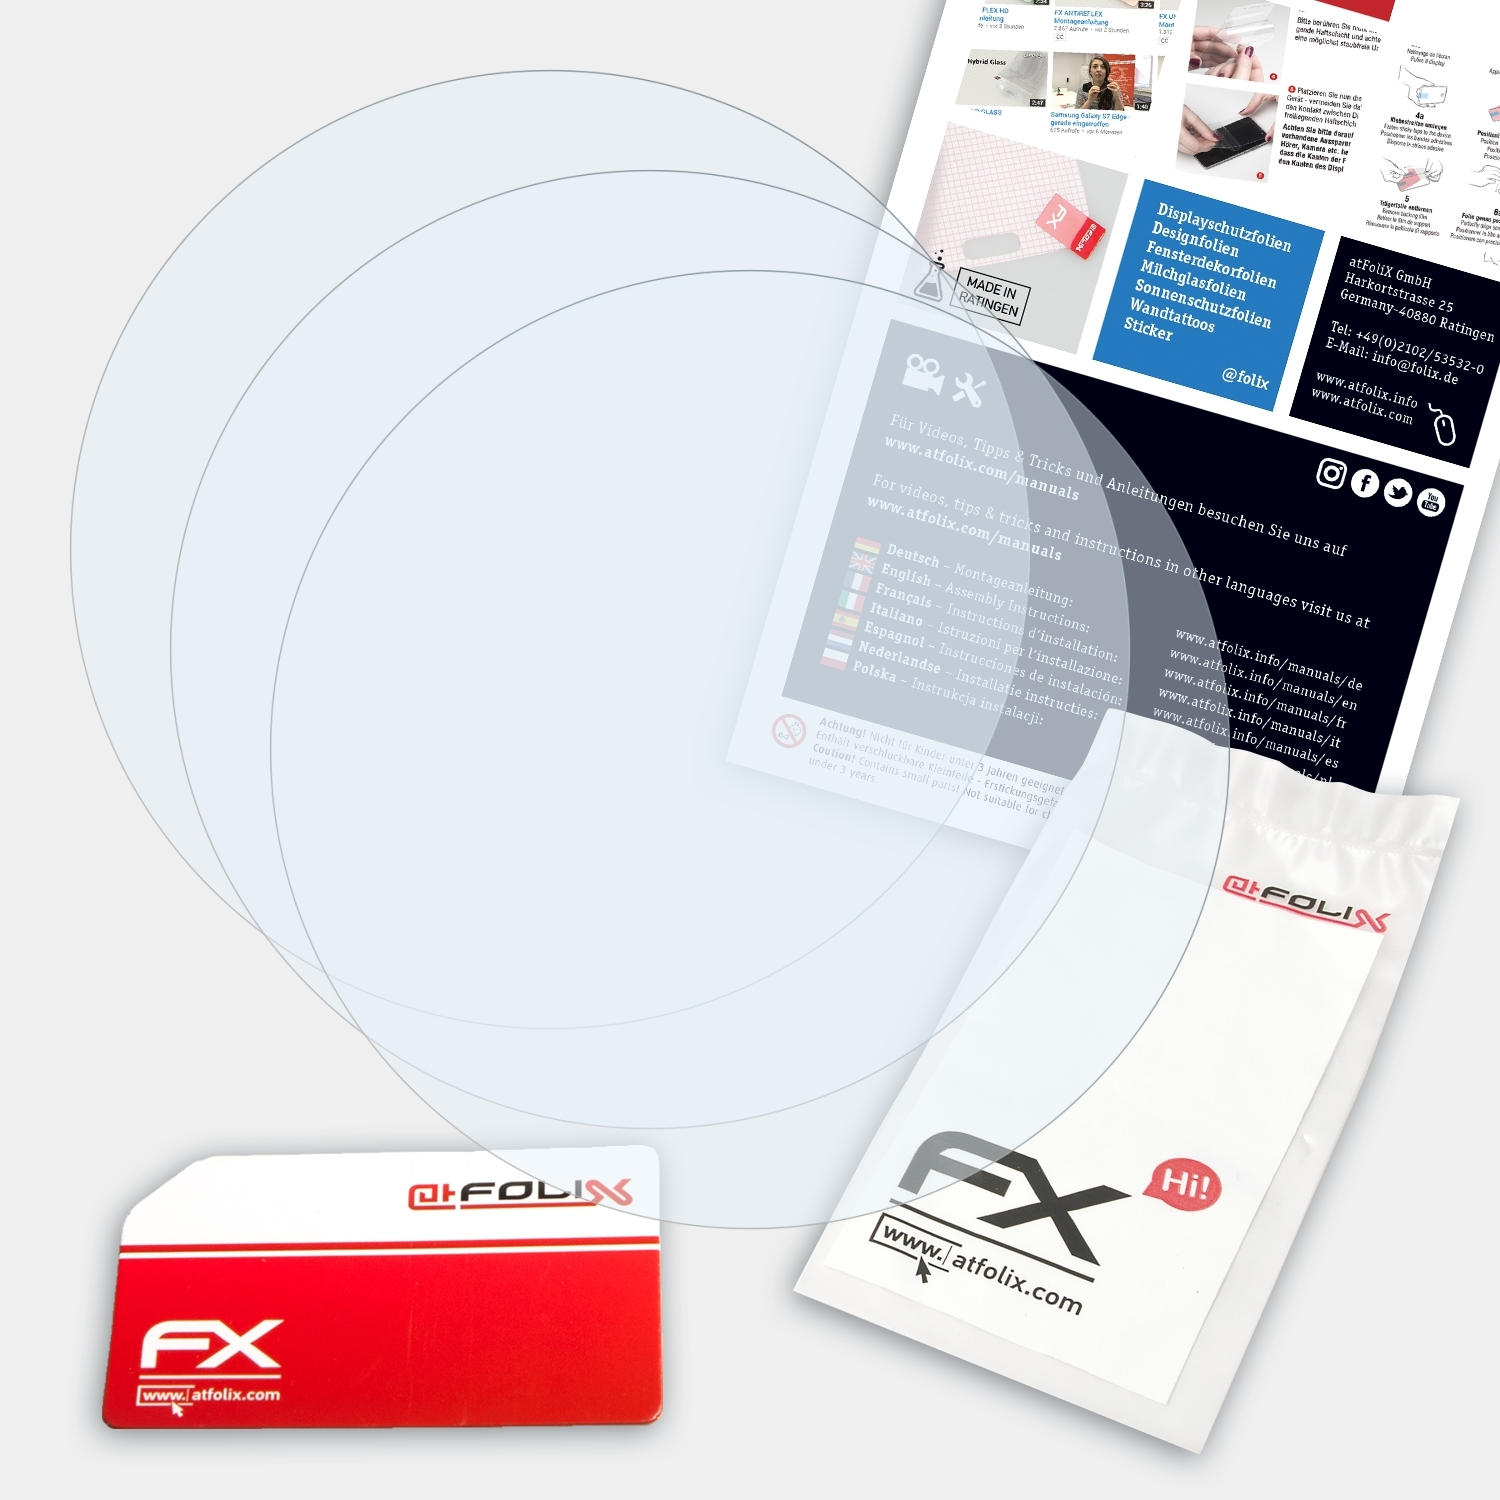 ATFOLIX FX-Clear Fenix Garmin mm)) 5S Displayschutz(für 3x (42